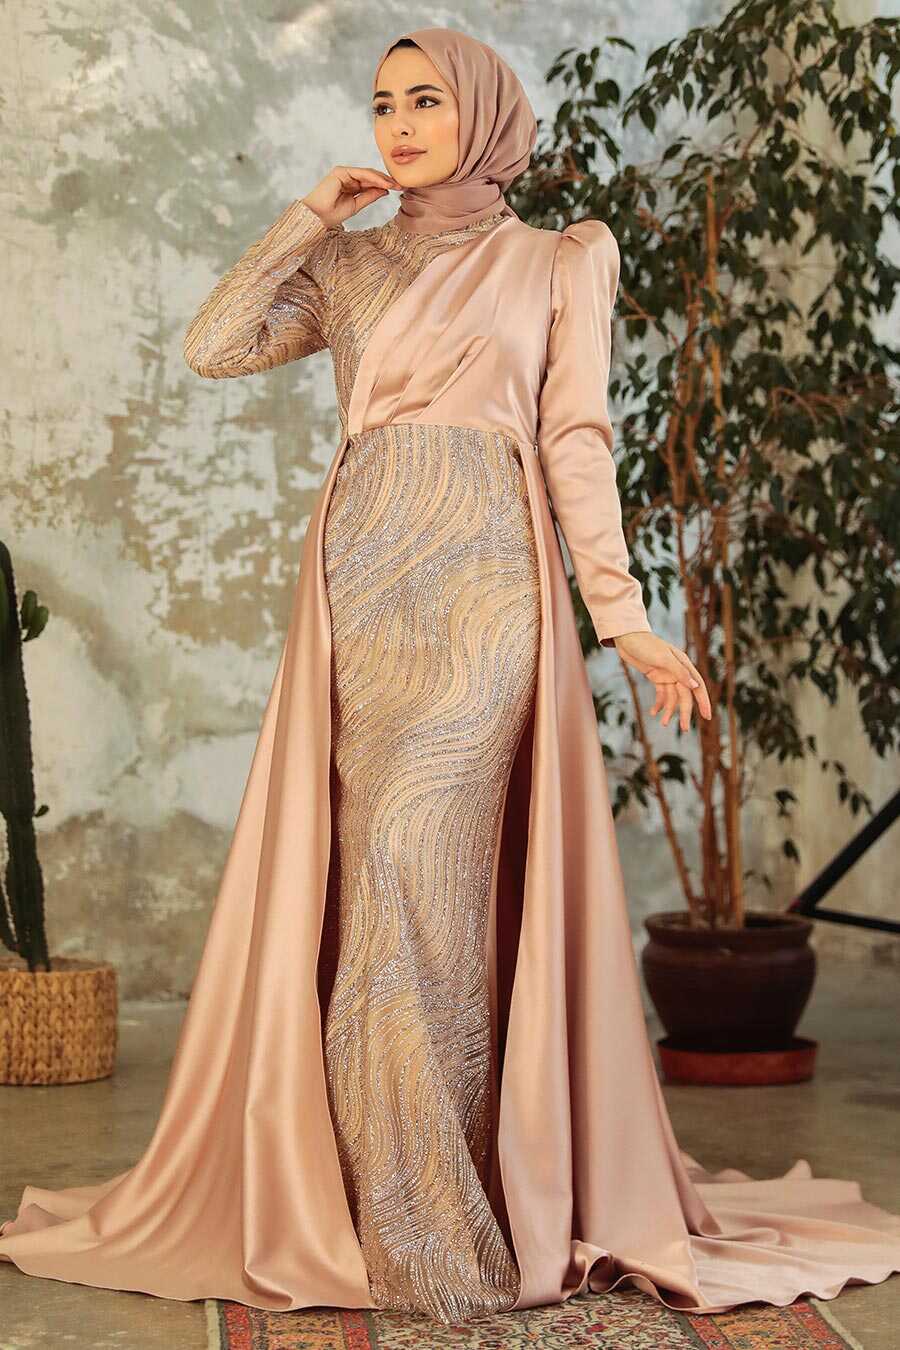 Neva Style - Elegant Gold Islamic Clothing Evening Gown 22924GOLD